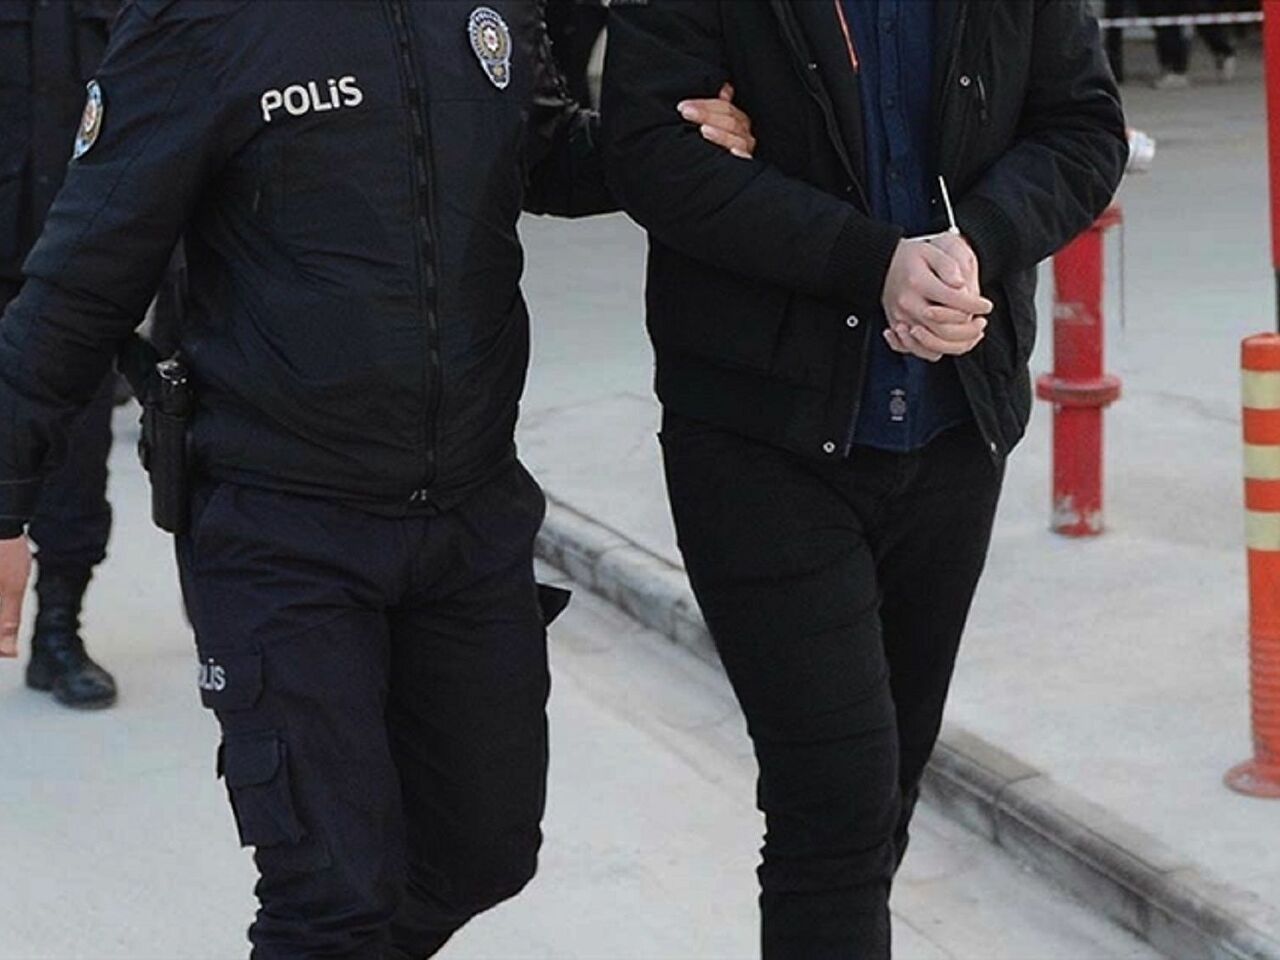 Kayseri'de terör örgütü üyesi 2 kişi yakalandı